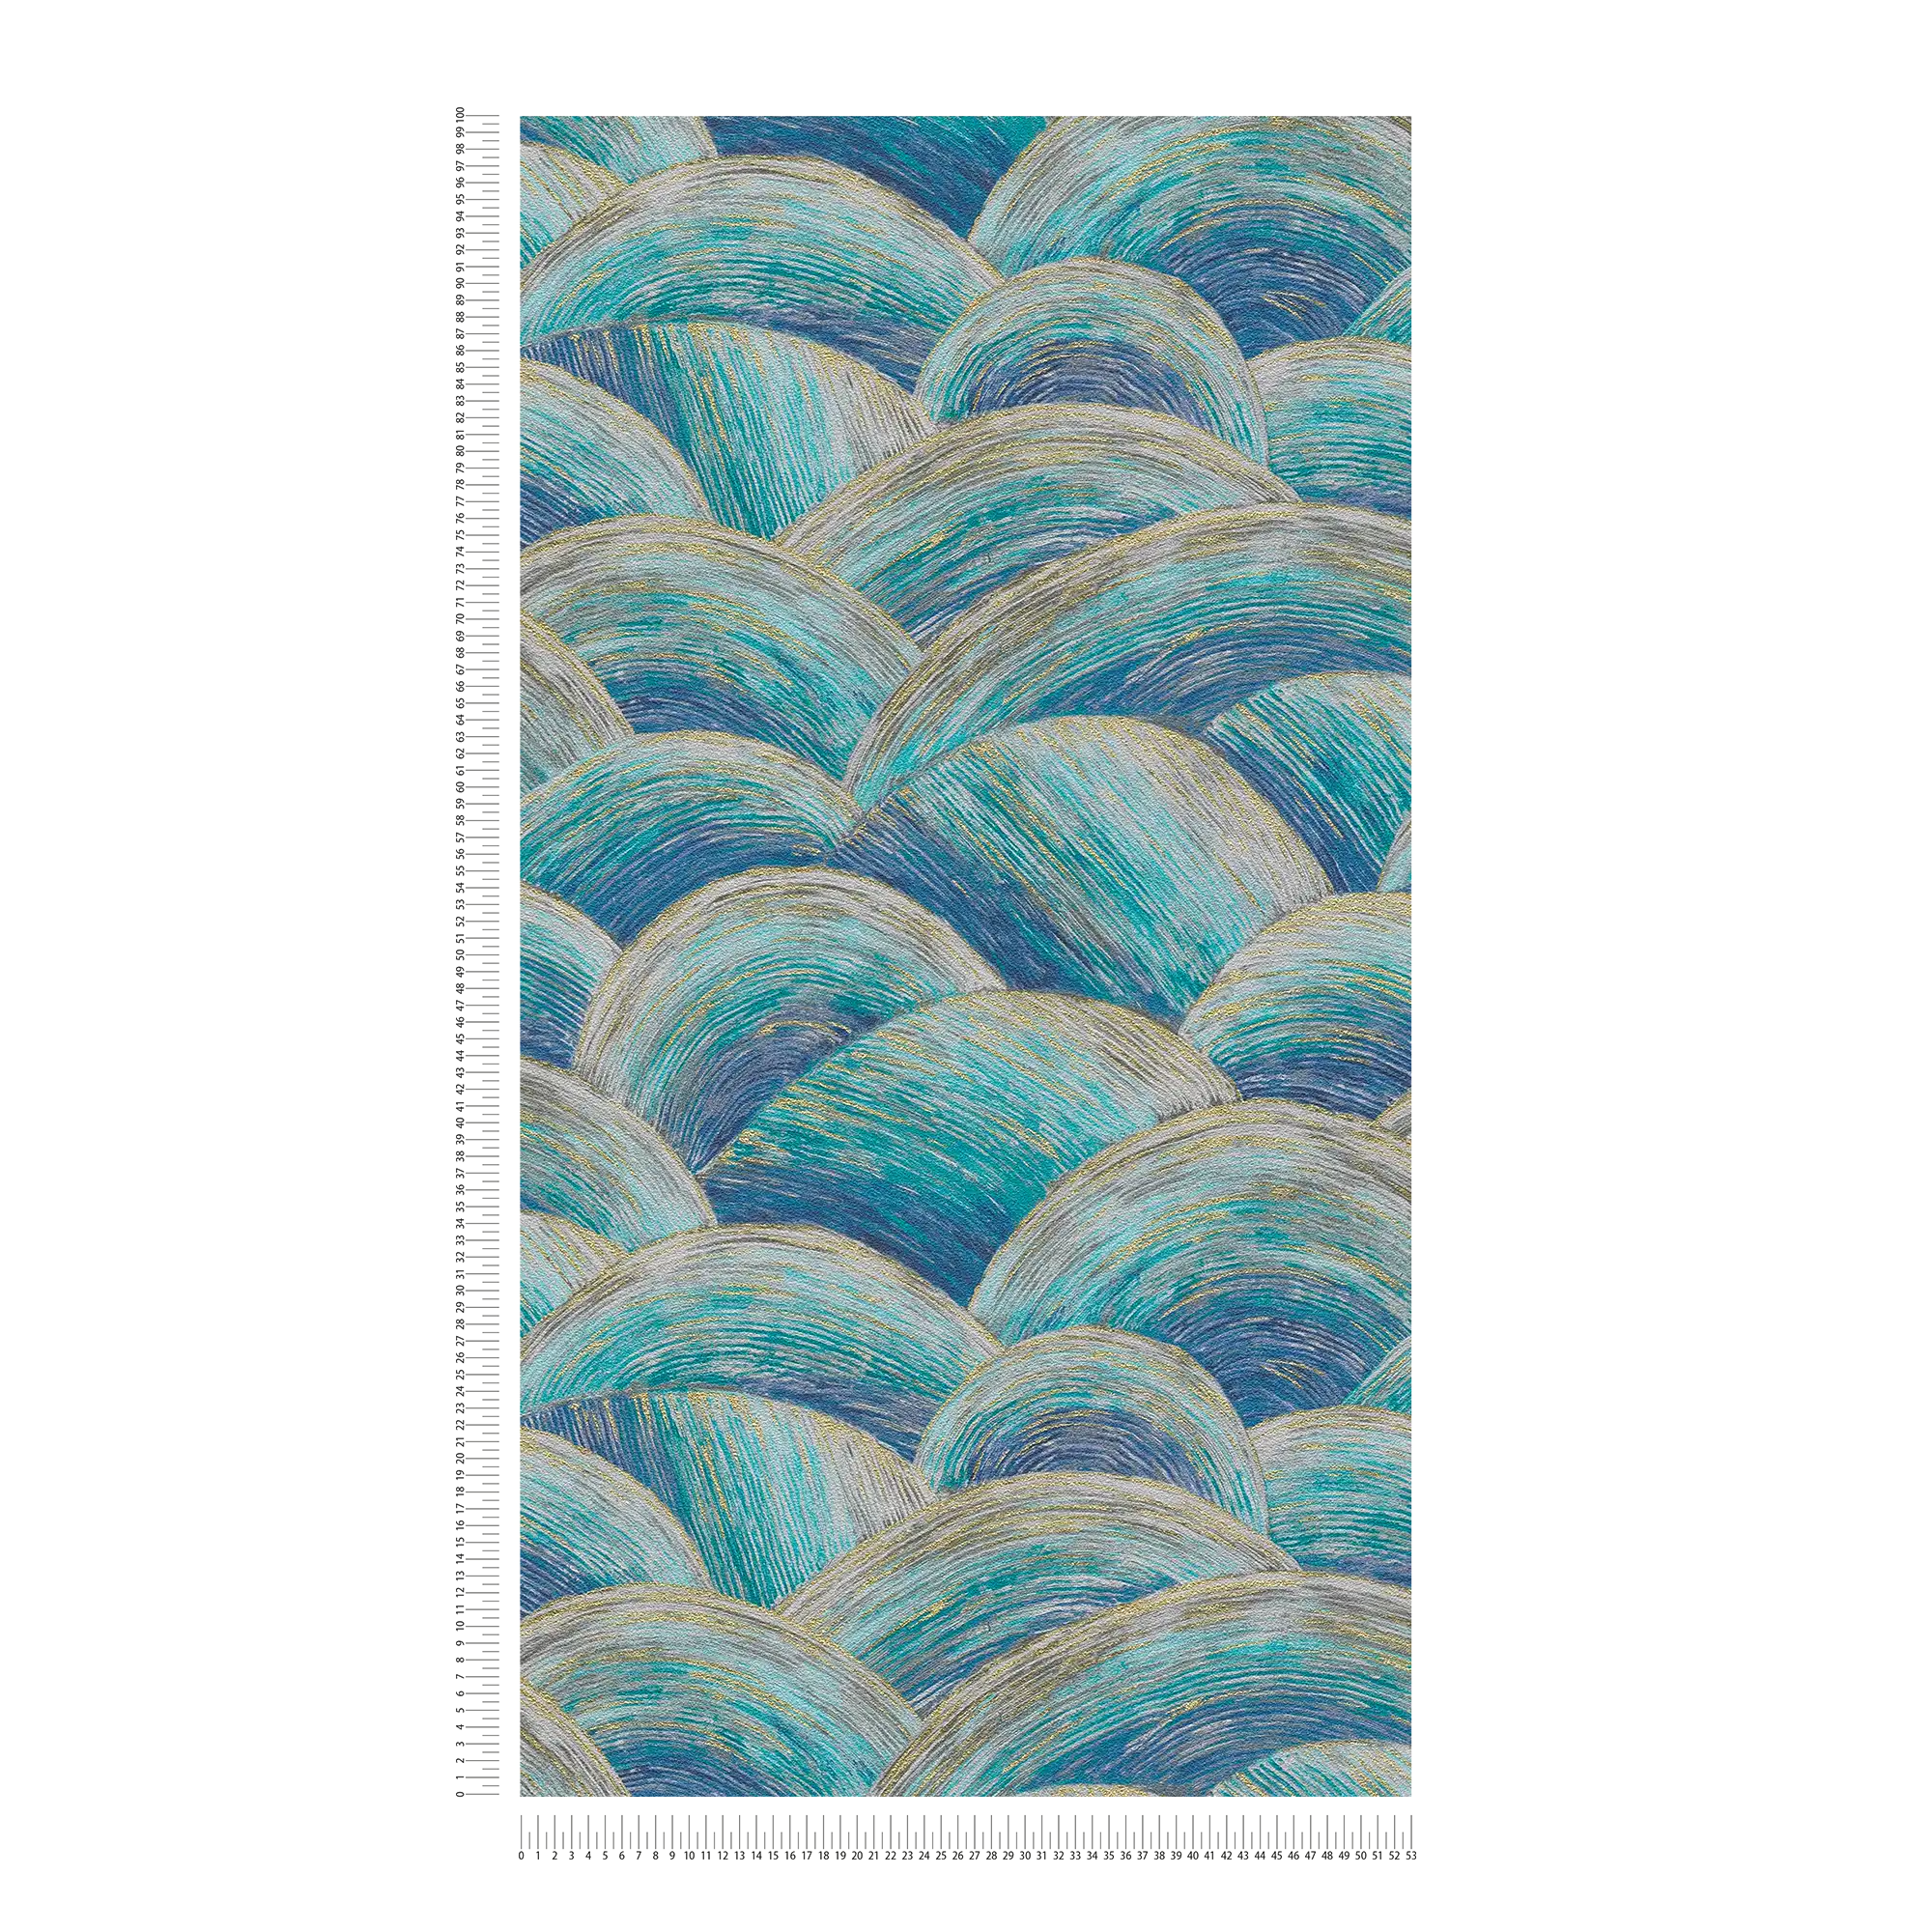             Papel pintado tejido-no tejido abstracto con motivo ondulado y efecto brillante - azul, turquesa, dorado
        